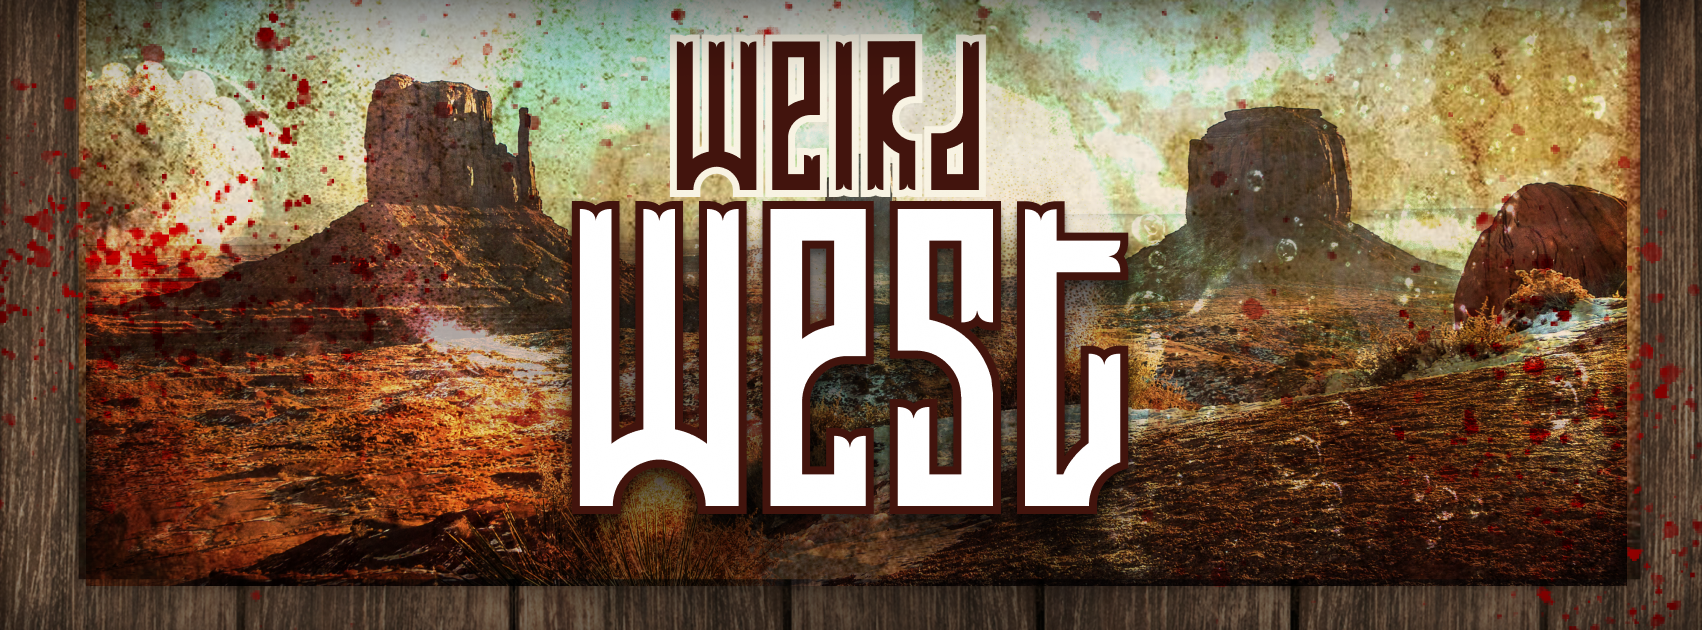 Weird west.png